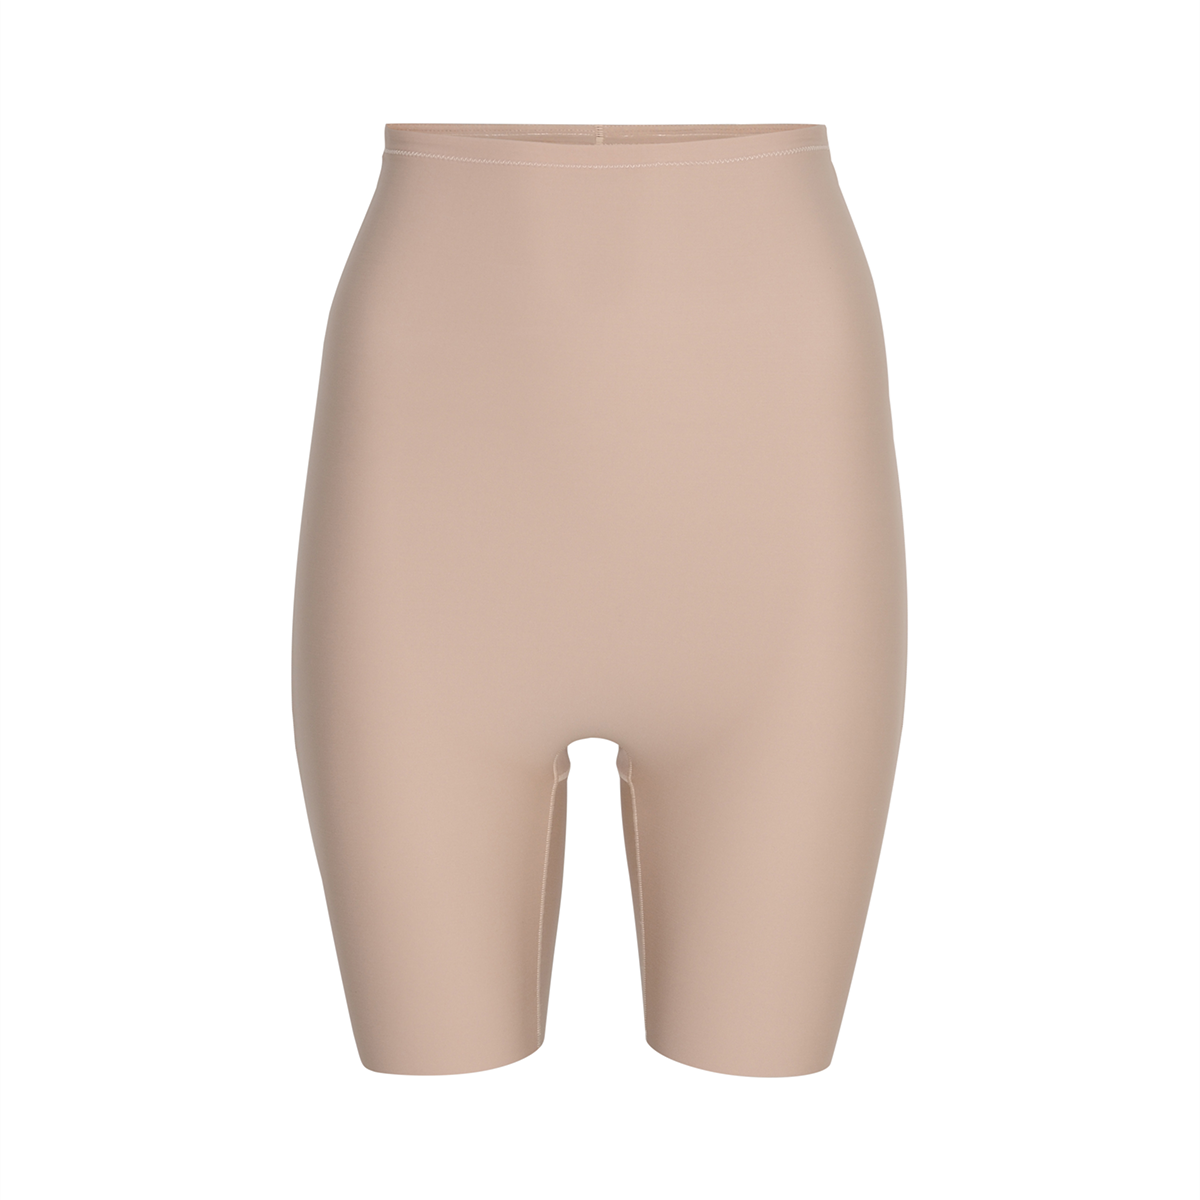 Decoy Shapewear Shorts, Farbe: Sand, Größe: XXL, Damen von Decoy